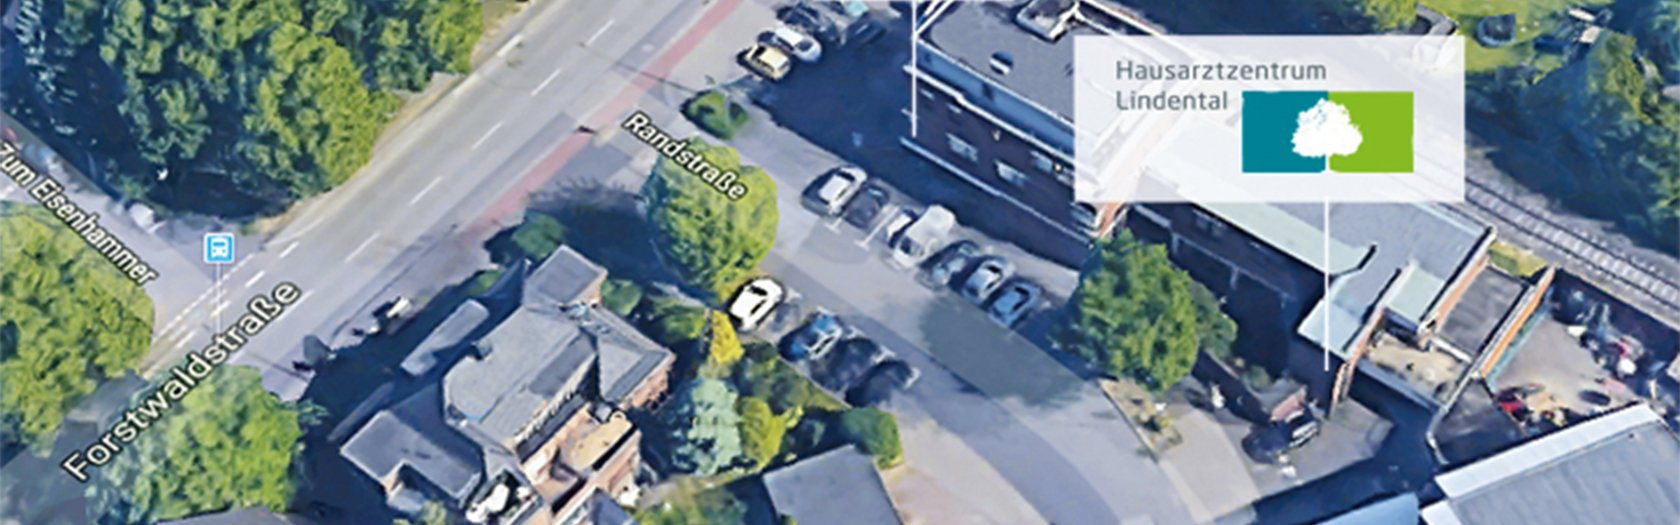 Luftbild 1 – Anfahrt Hausarztzentrum Lindental